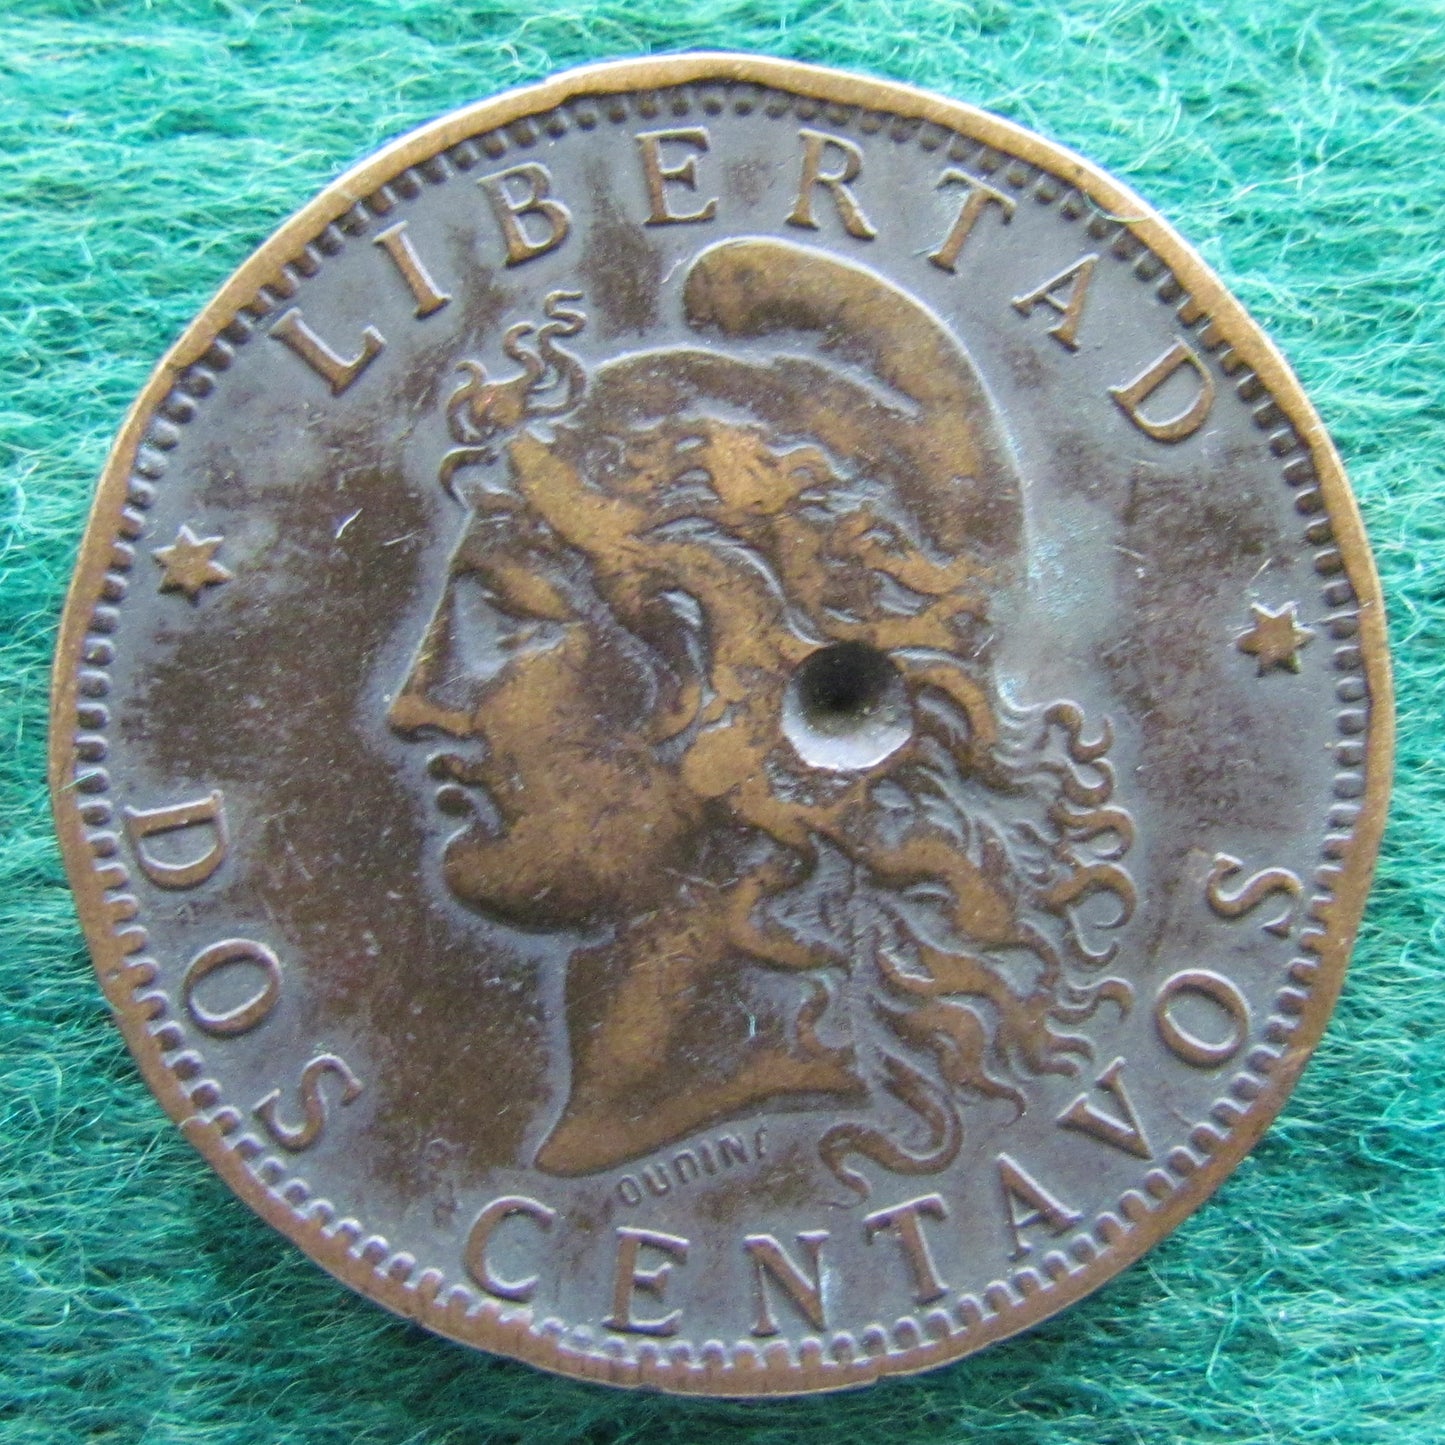 Argentina 1894 2 Centavos Coin - Circulated